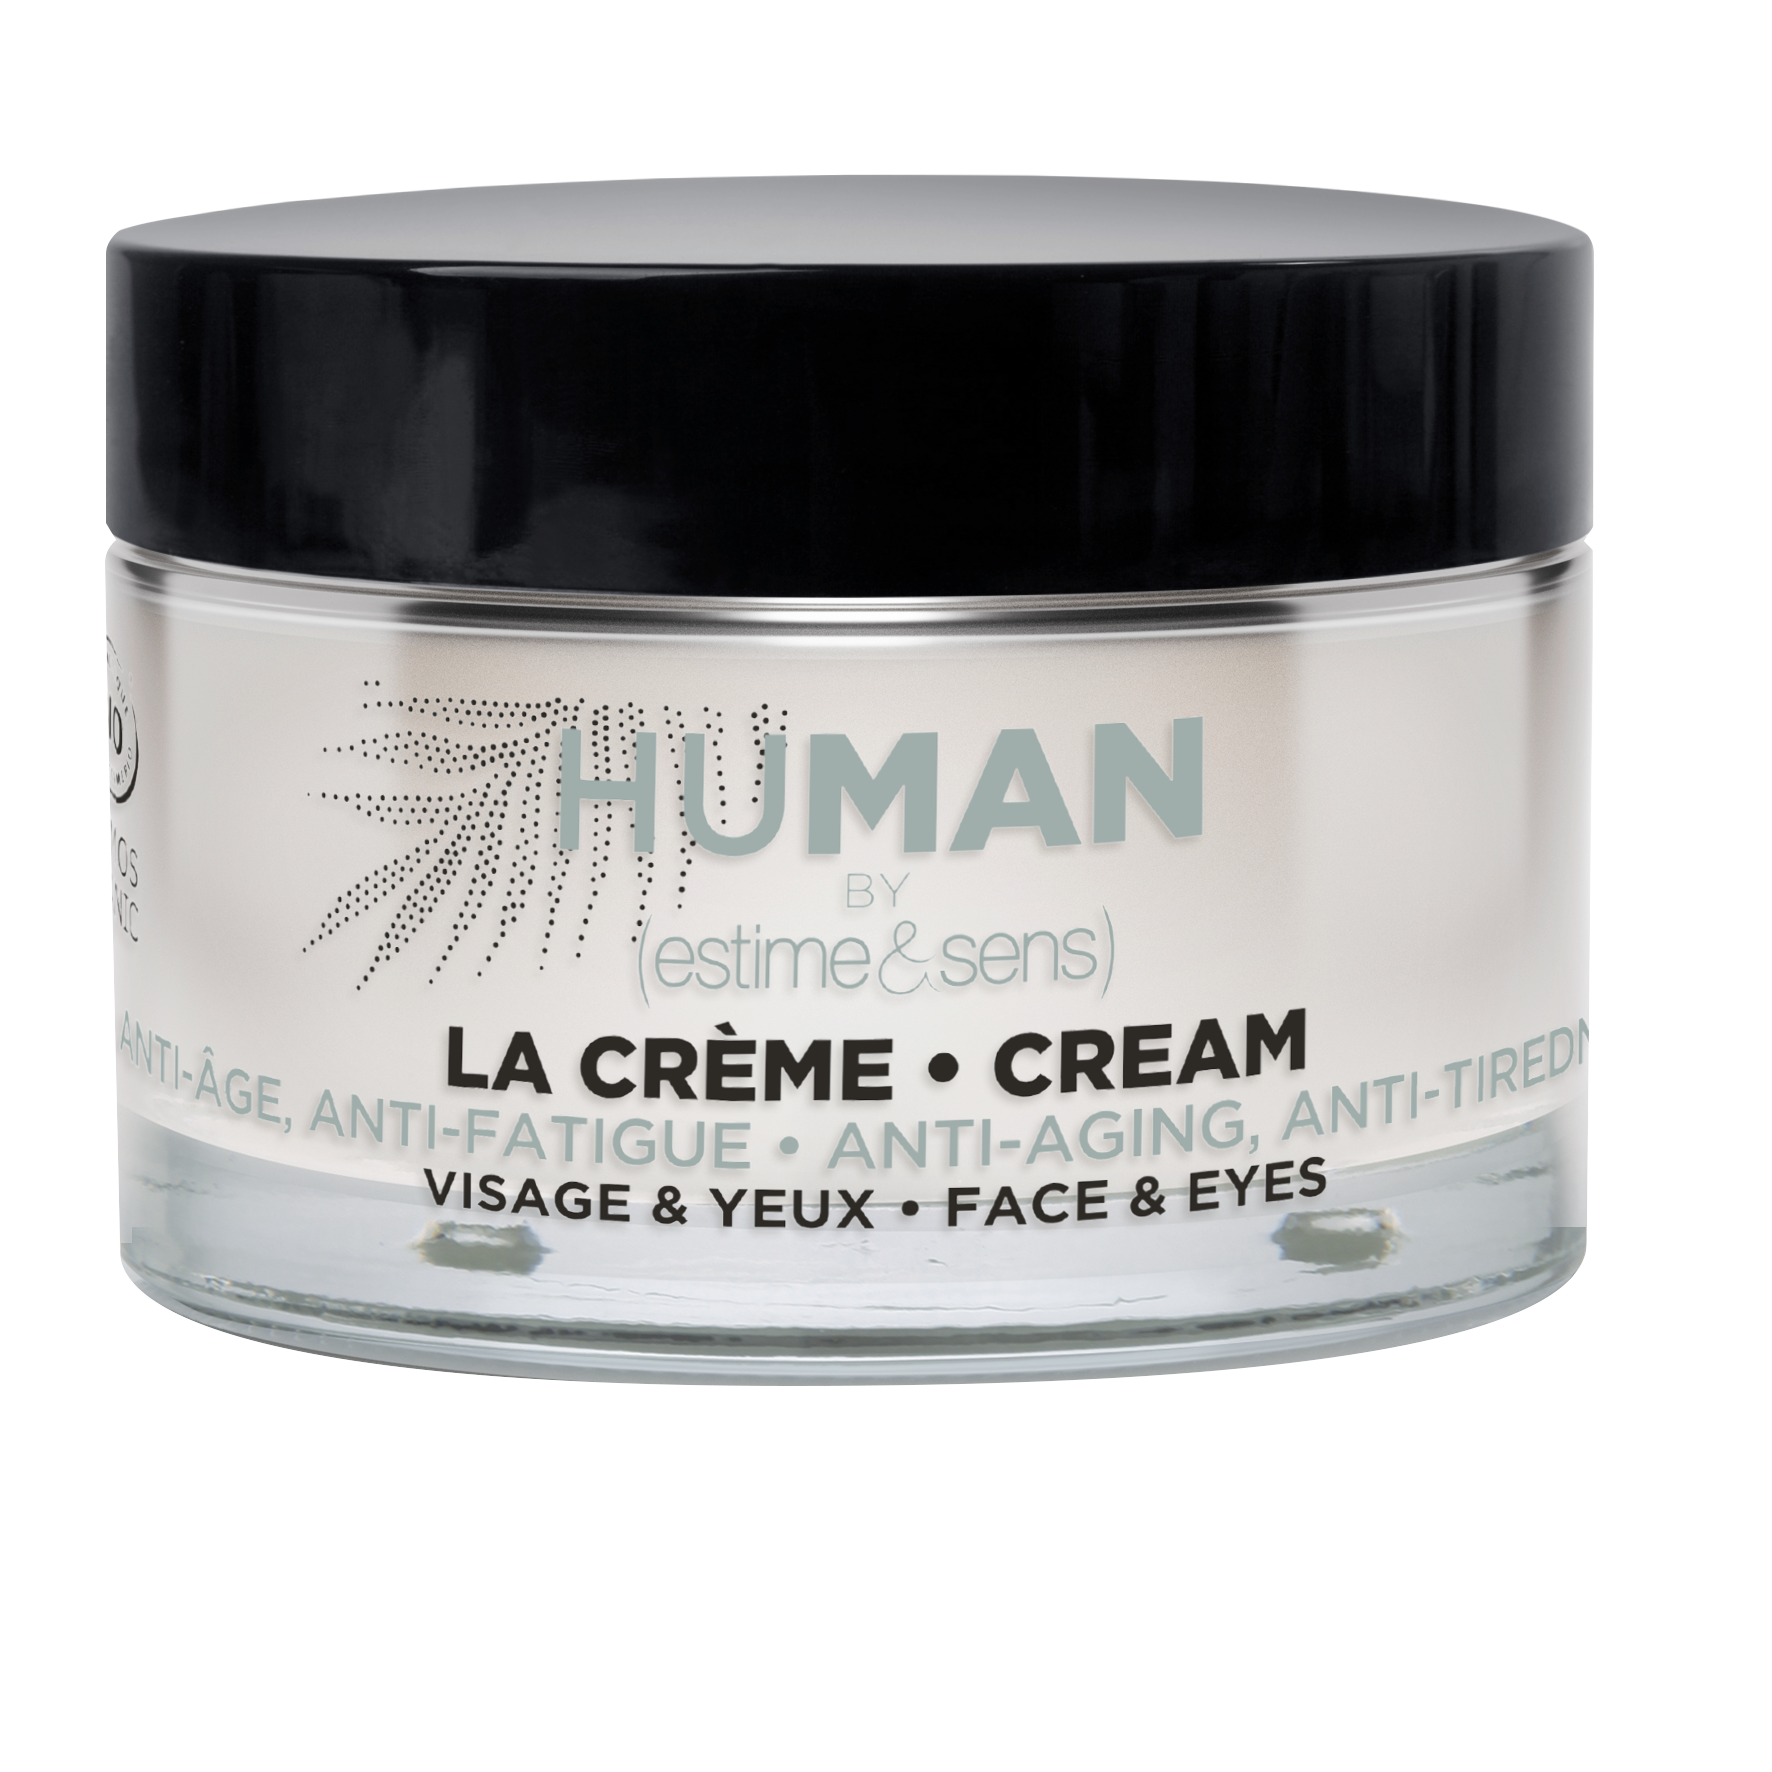 Human - La Crème Anti-Age, Anti-fatigue, Visage & Yeux